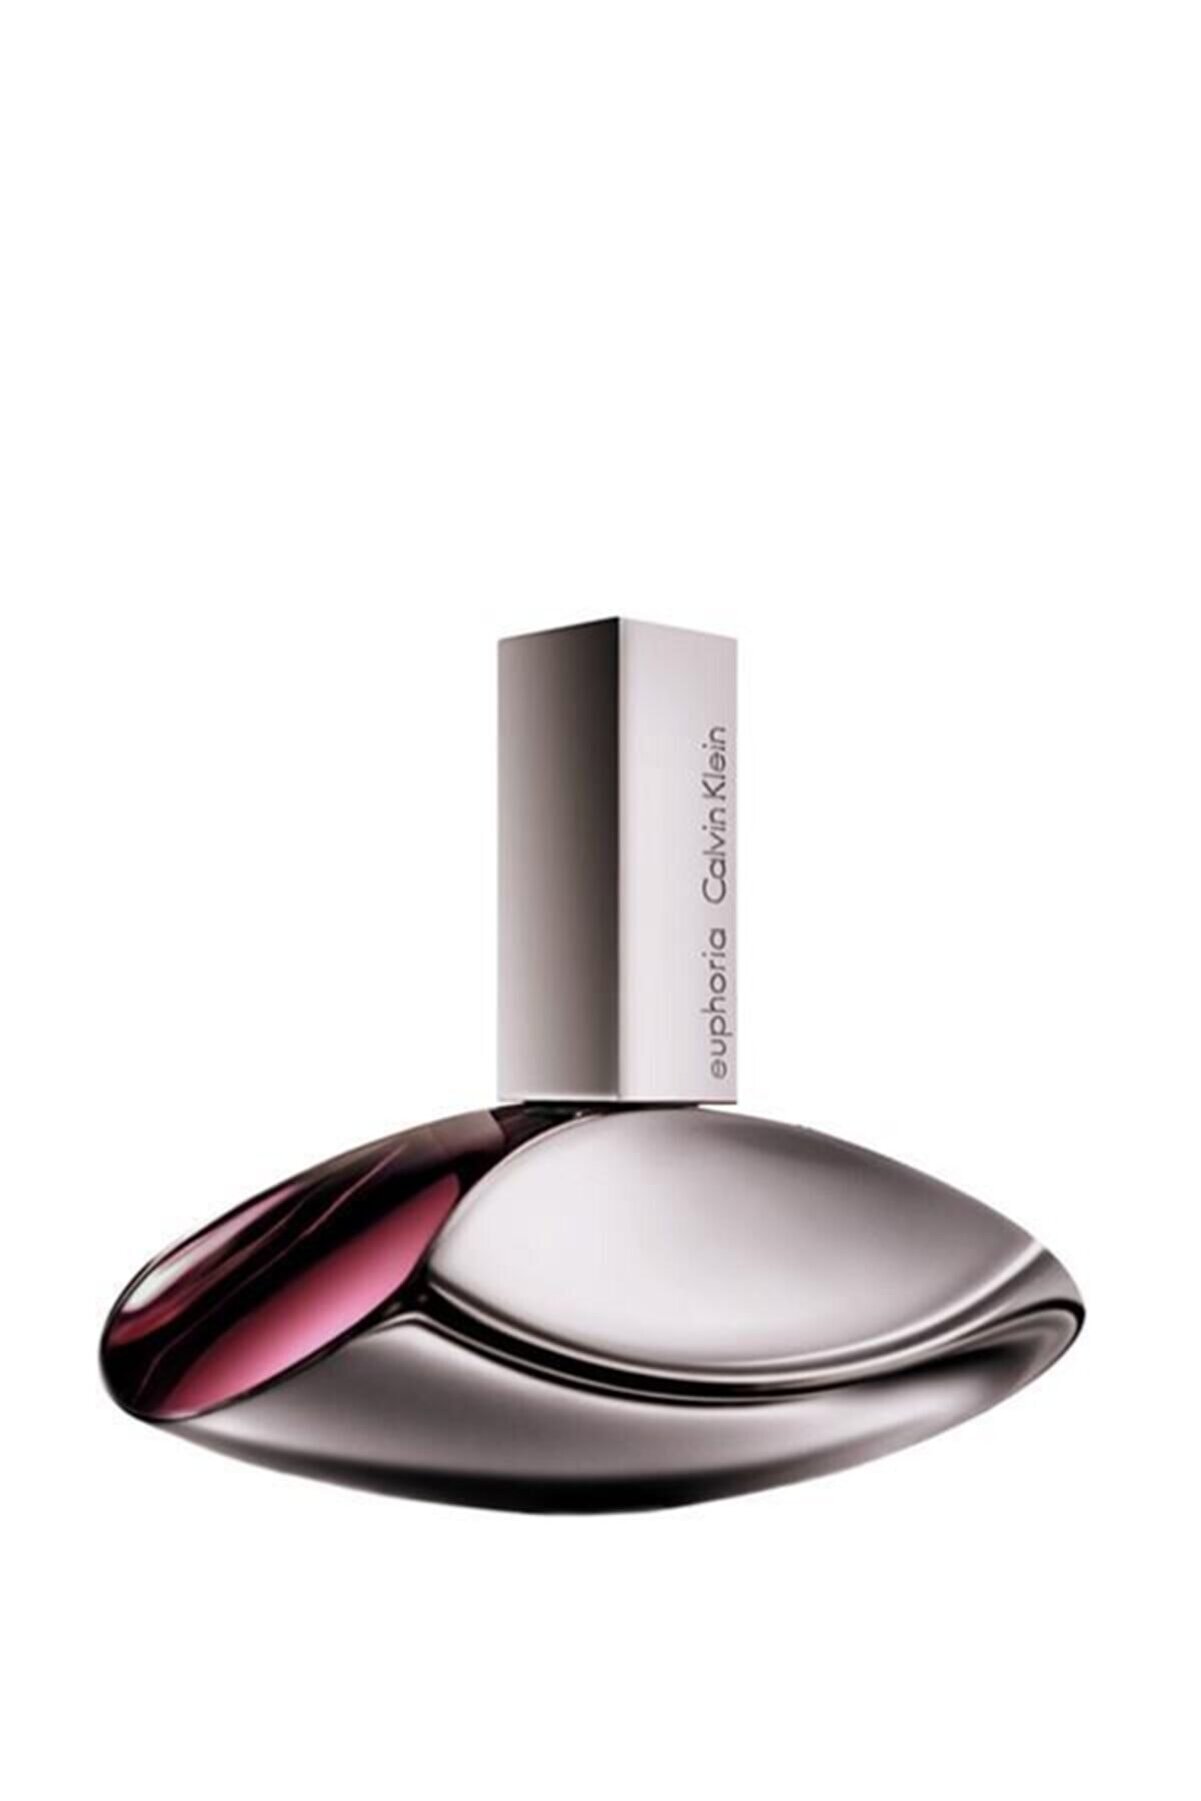 Calvin Klein Euphoria  Edp 100 ml Kadın Parfüm 088300162512